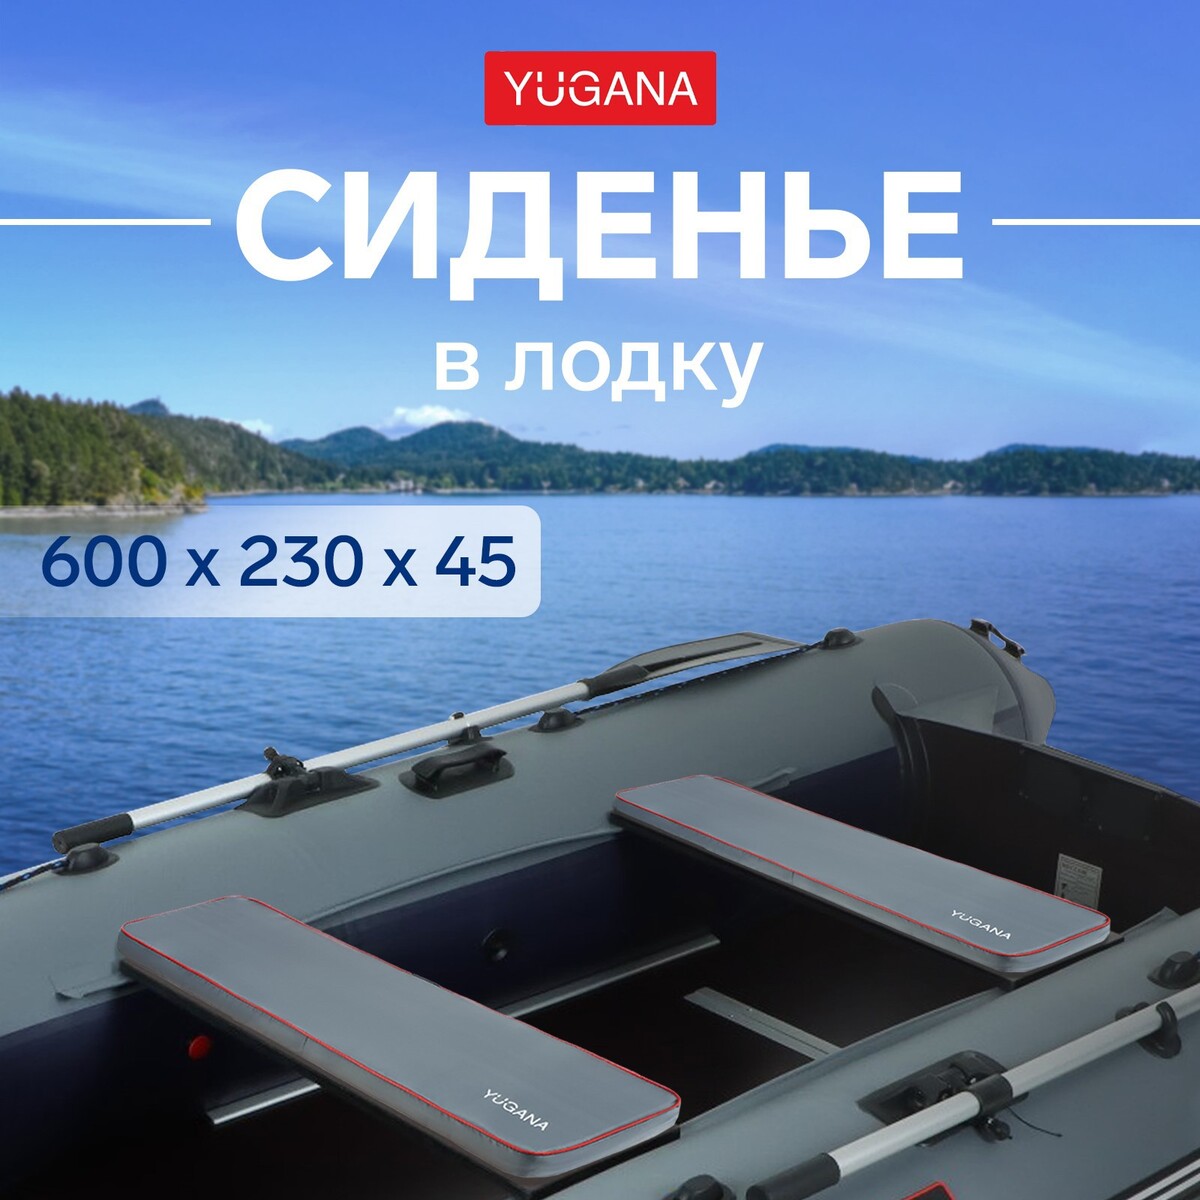 Сиденье в лодку yugana, цвет серый, 600 x 230 x 45 мм сиденье в лодку yugana серый 450 x 230 x 30 мм